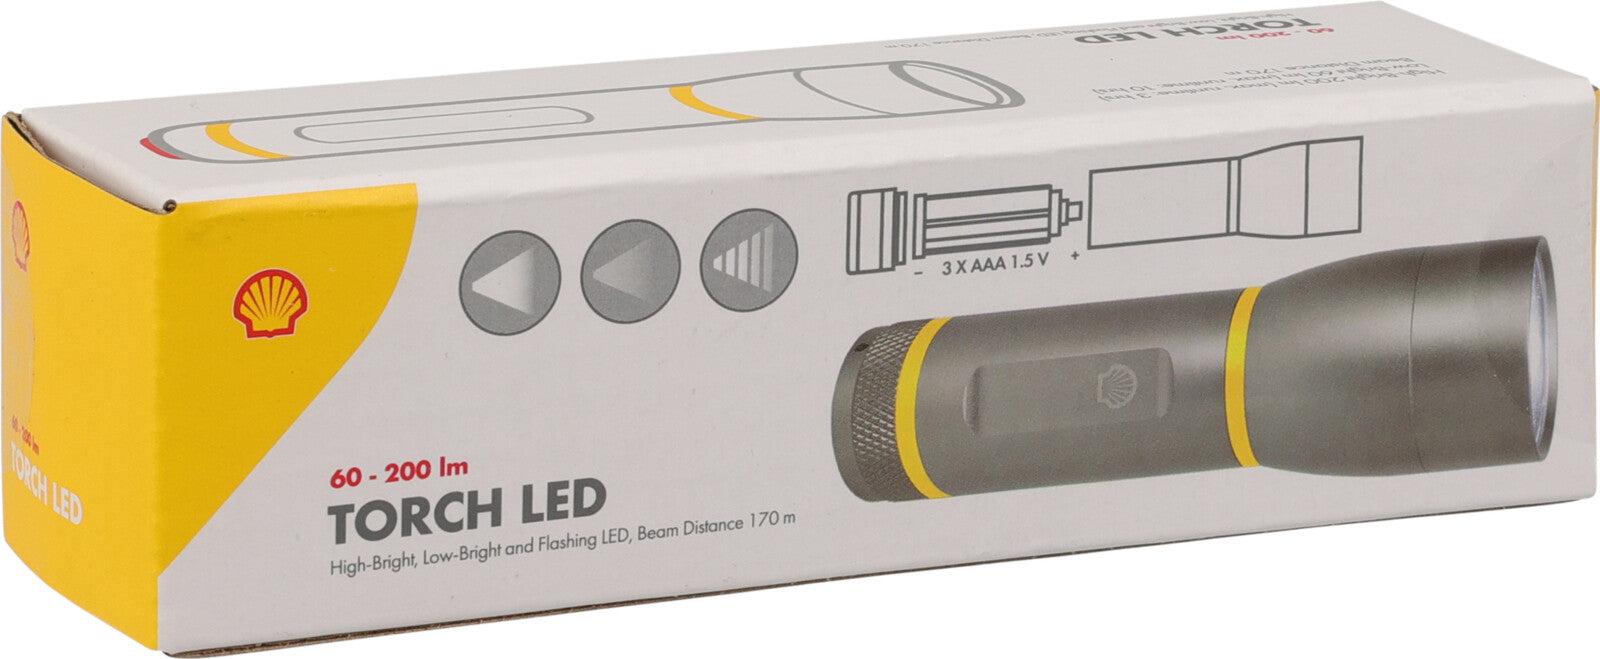 Shell Zaklamp - LED - Inzoombaar